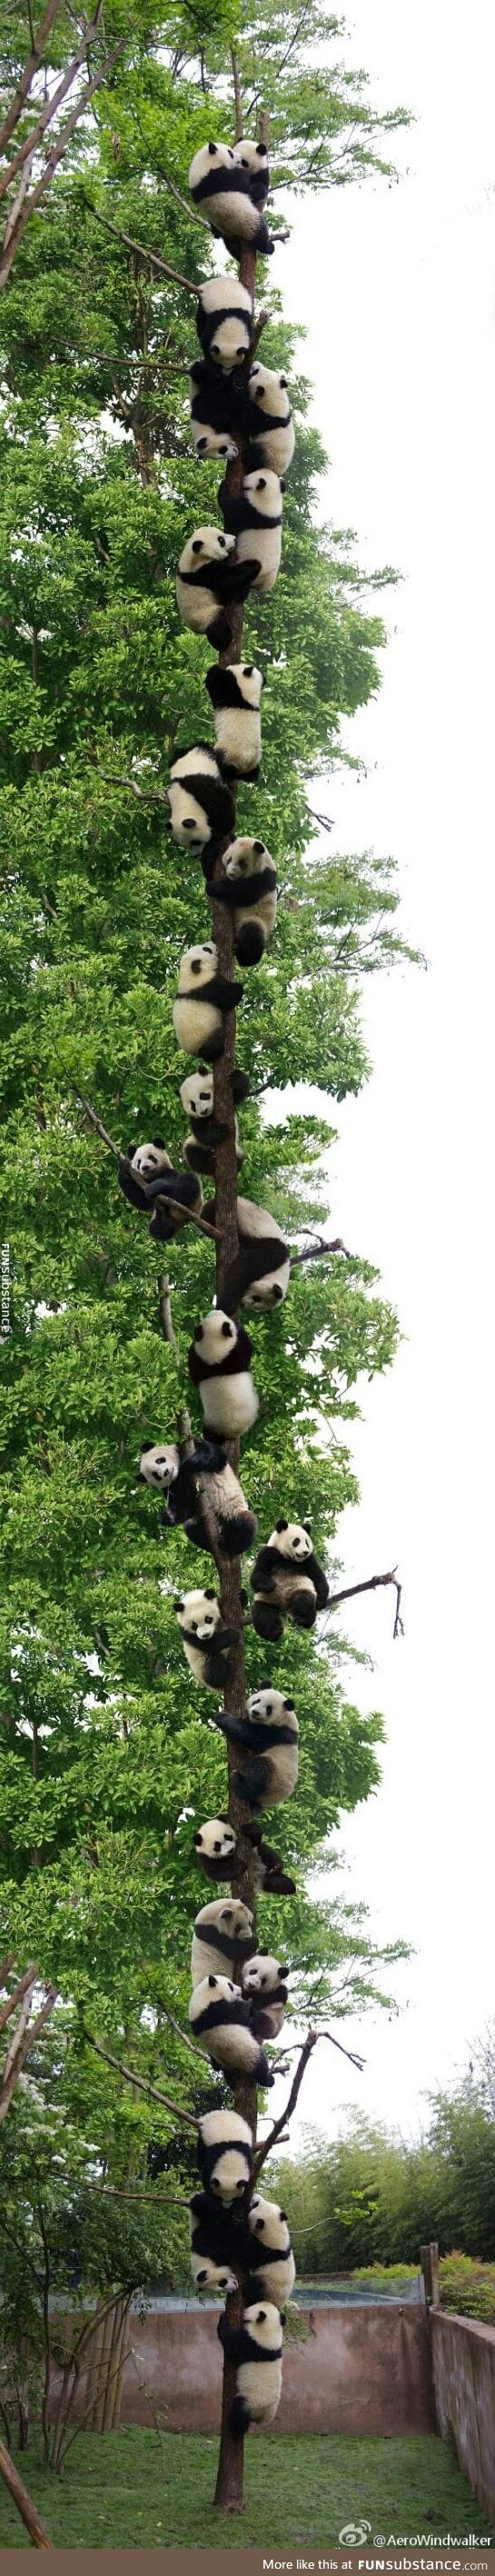 27 Pandas in a tree